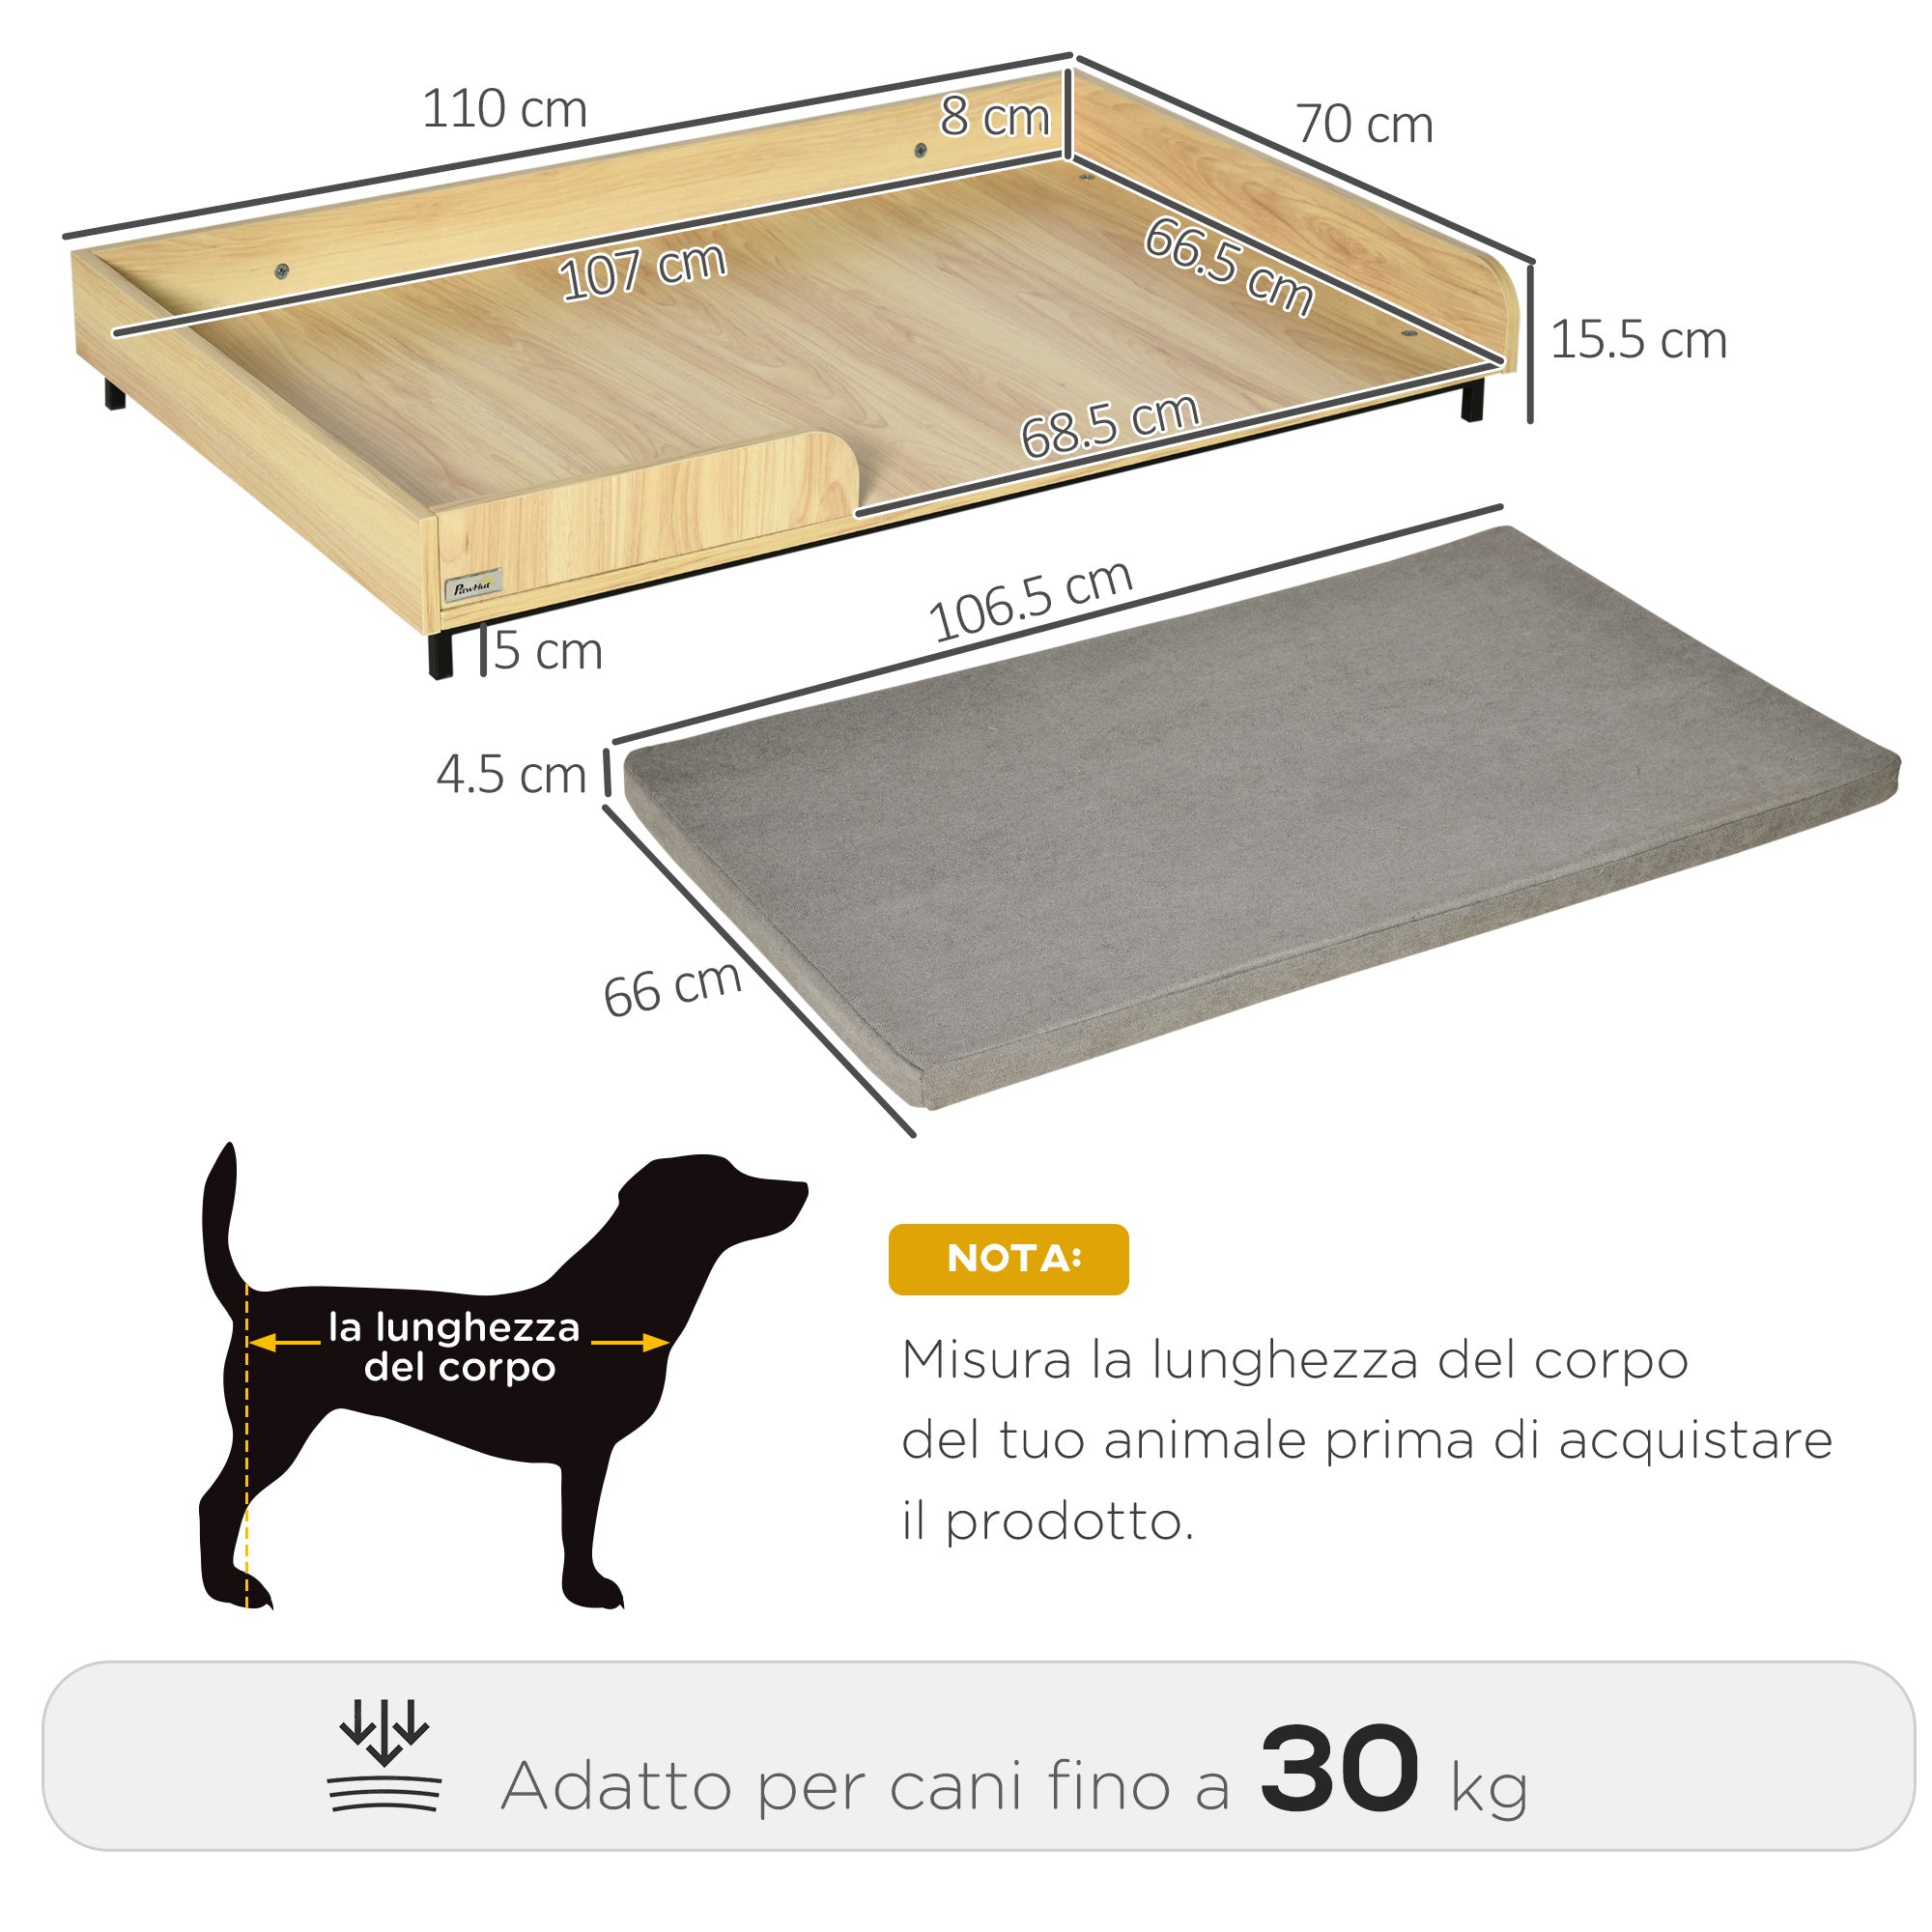 EASYCOMFORT Cuccia per Cani Rialzata con Cuscino Removibile e Lavabile, Lettino  per Cani Gambe in Legno e Acciaio, 110x70x15.5cm, Rovere e Grigio